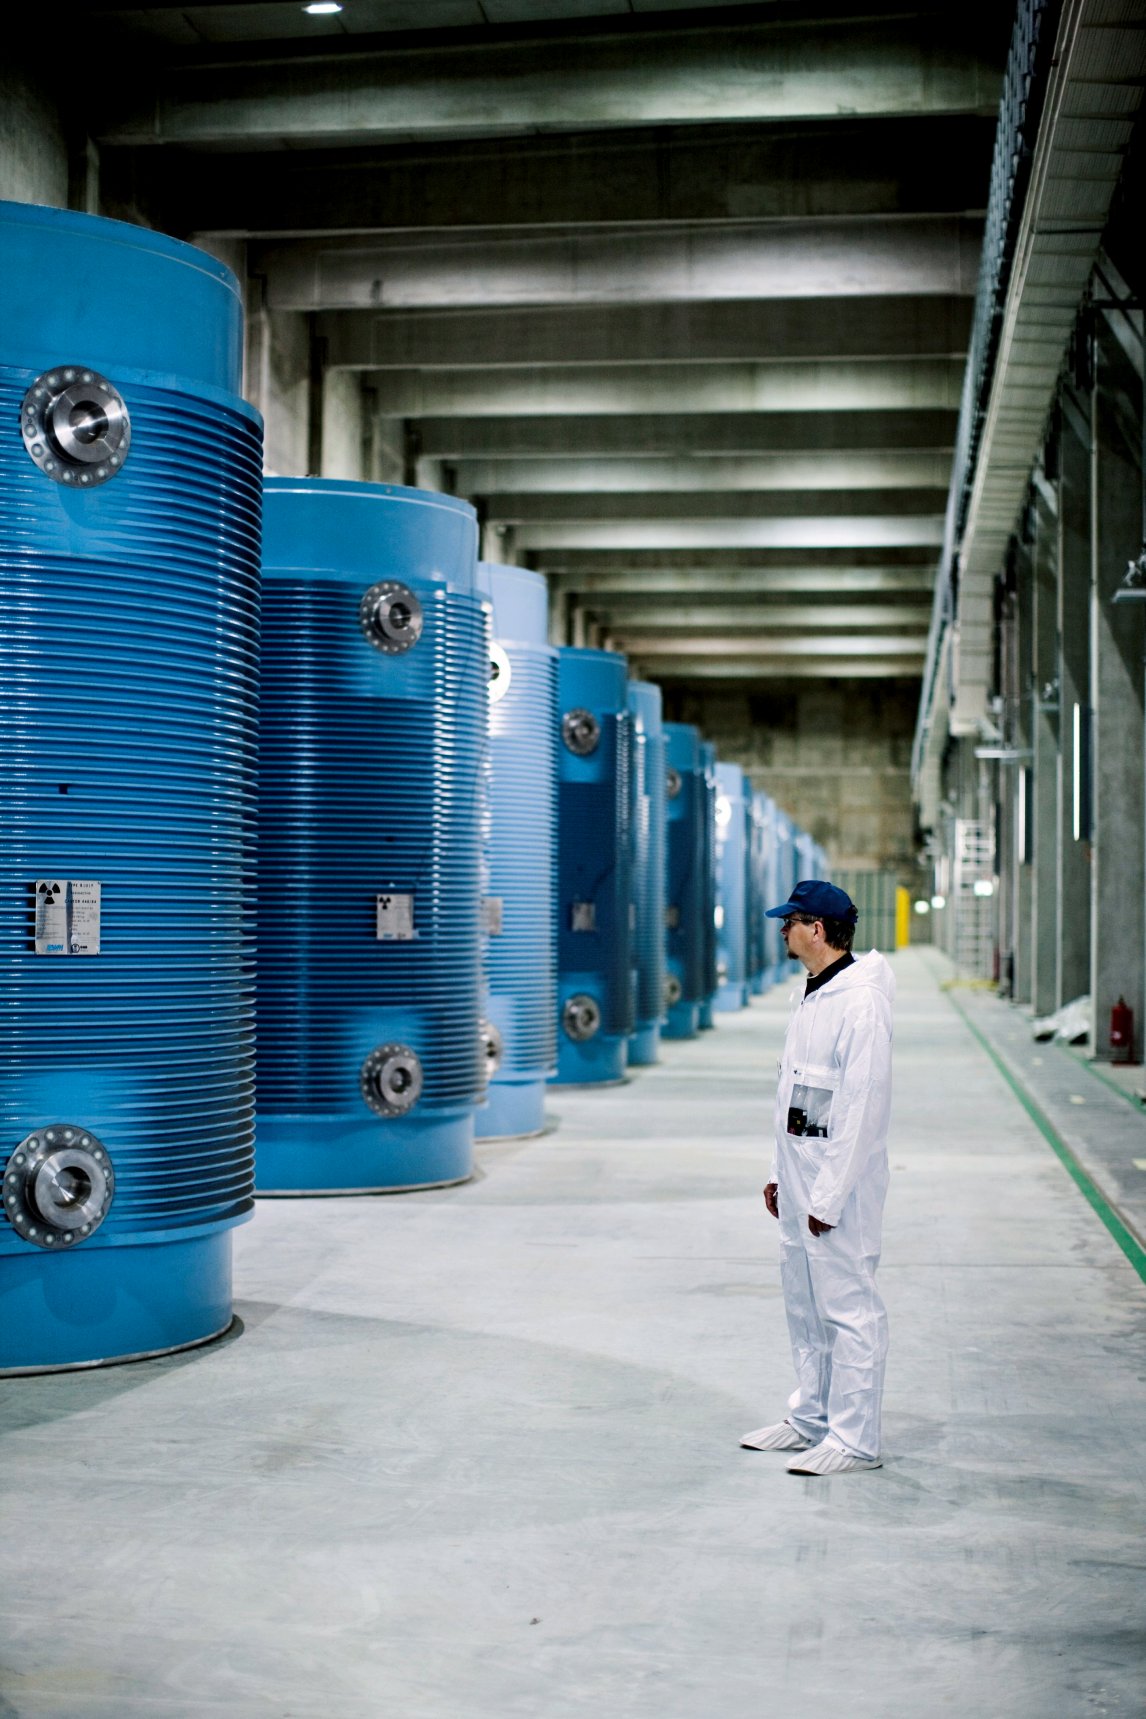 <p>SCHWERES ERBE Ein Mitarbeiter des Zwischenlagers Lubmin steht vor leeren Castorbehältern. Mit Atommüll gefüllt wiegen sie 110 Tonnen</p>
